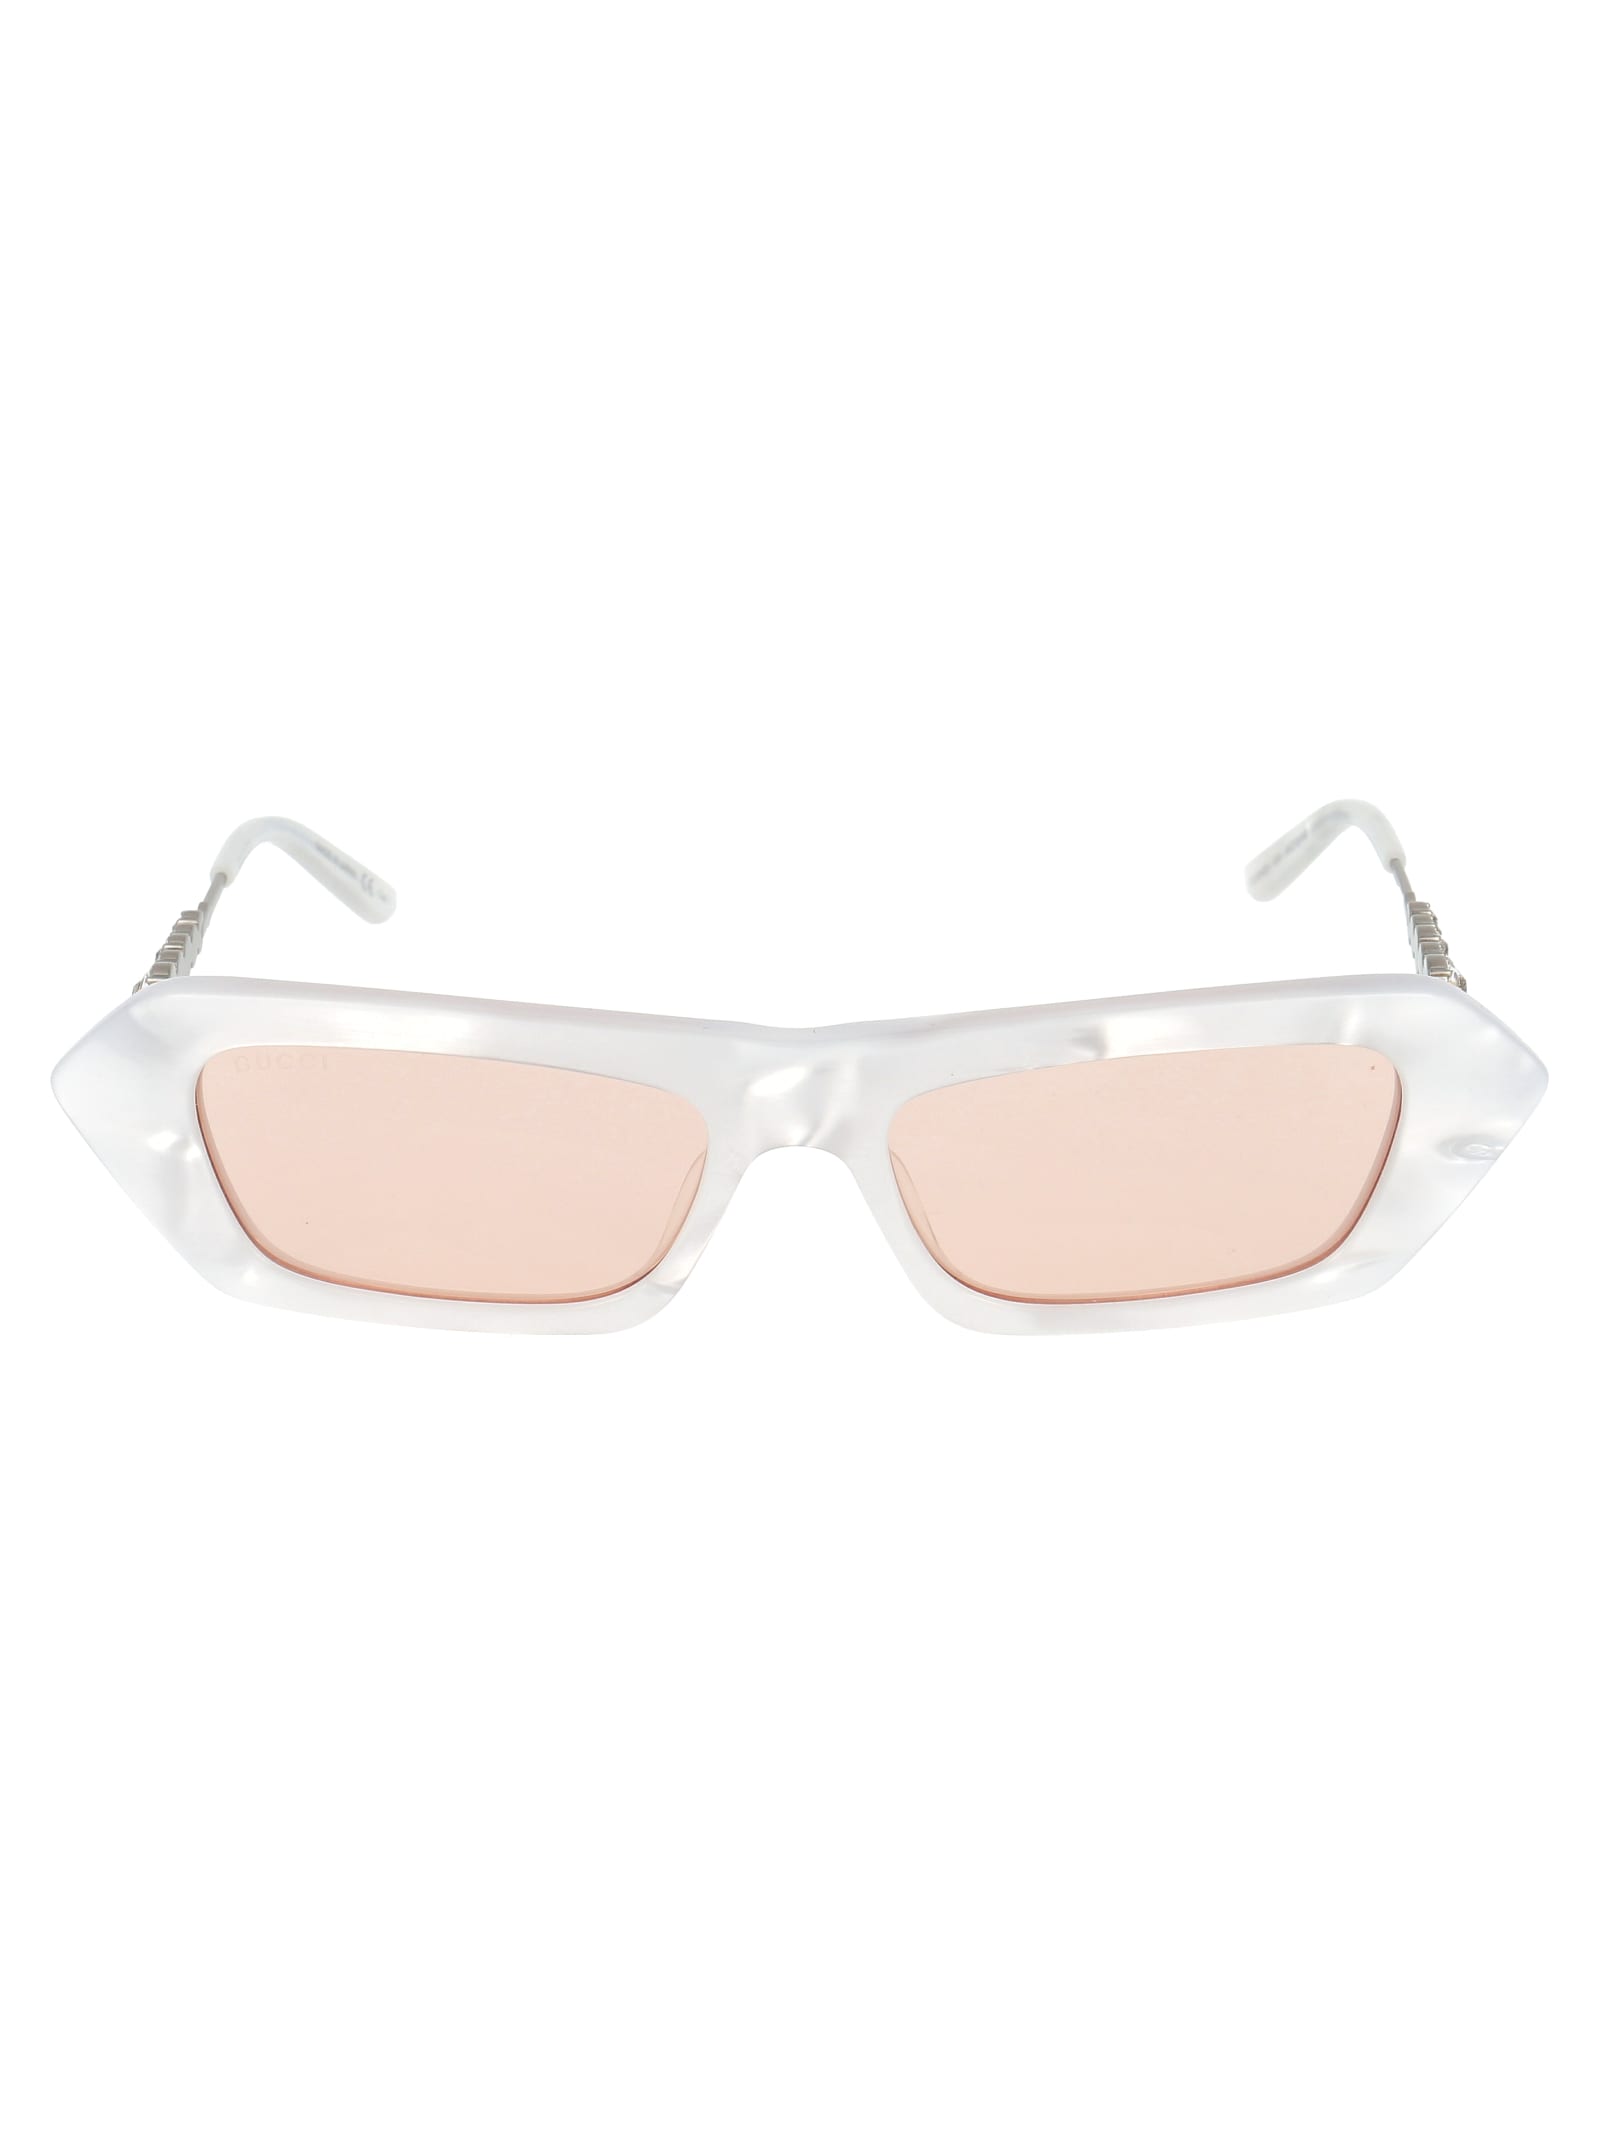 Gucci Sunglasses In White Silver Pink